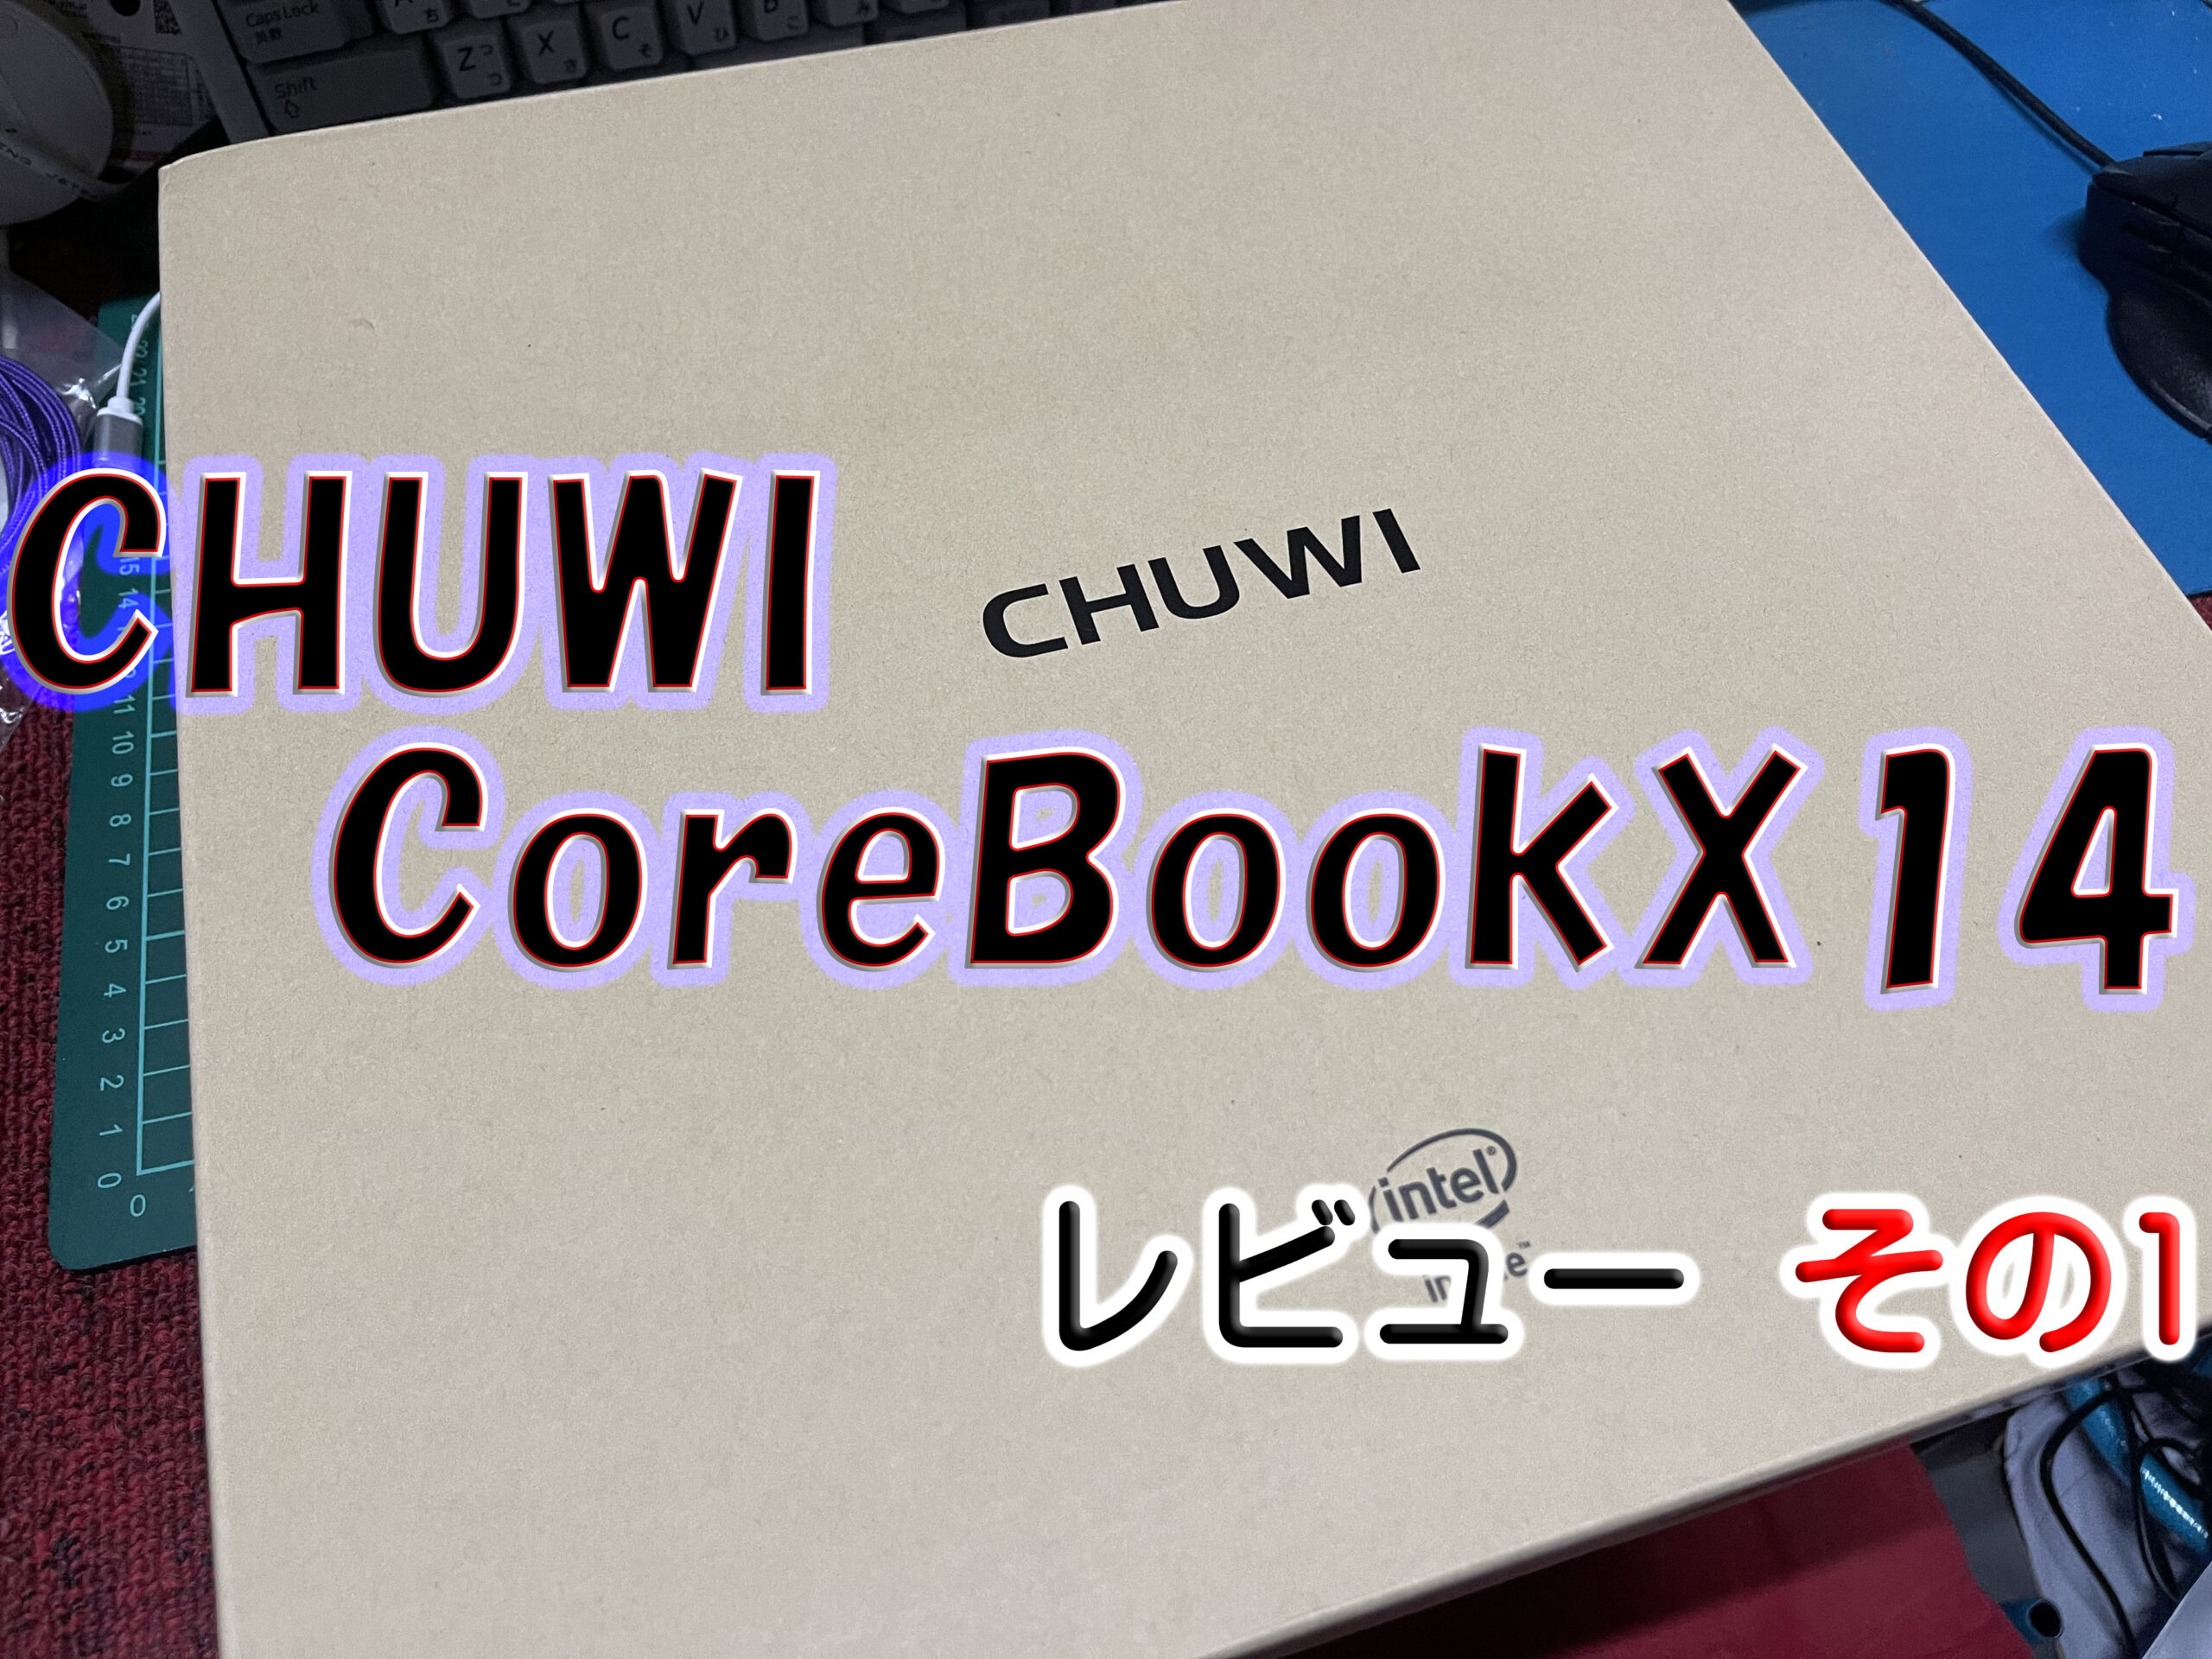 中華製ノートpc Chuwi Corebook X14 レビューその1 Gero Matsuの日記